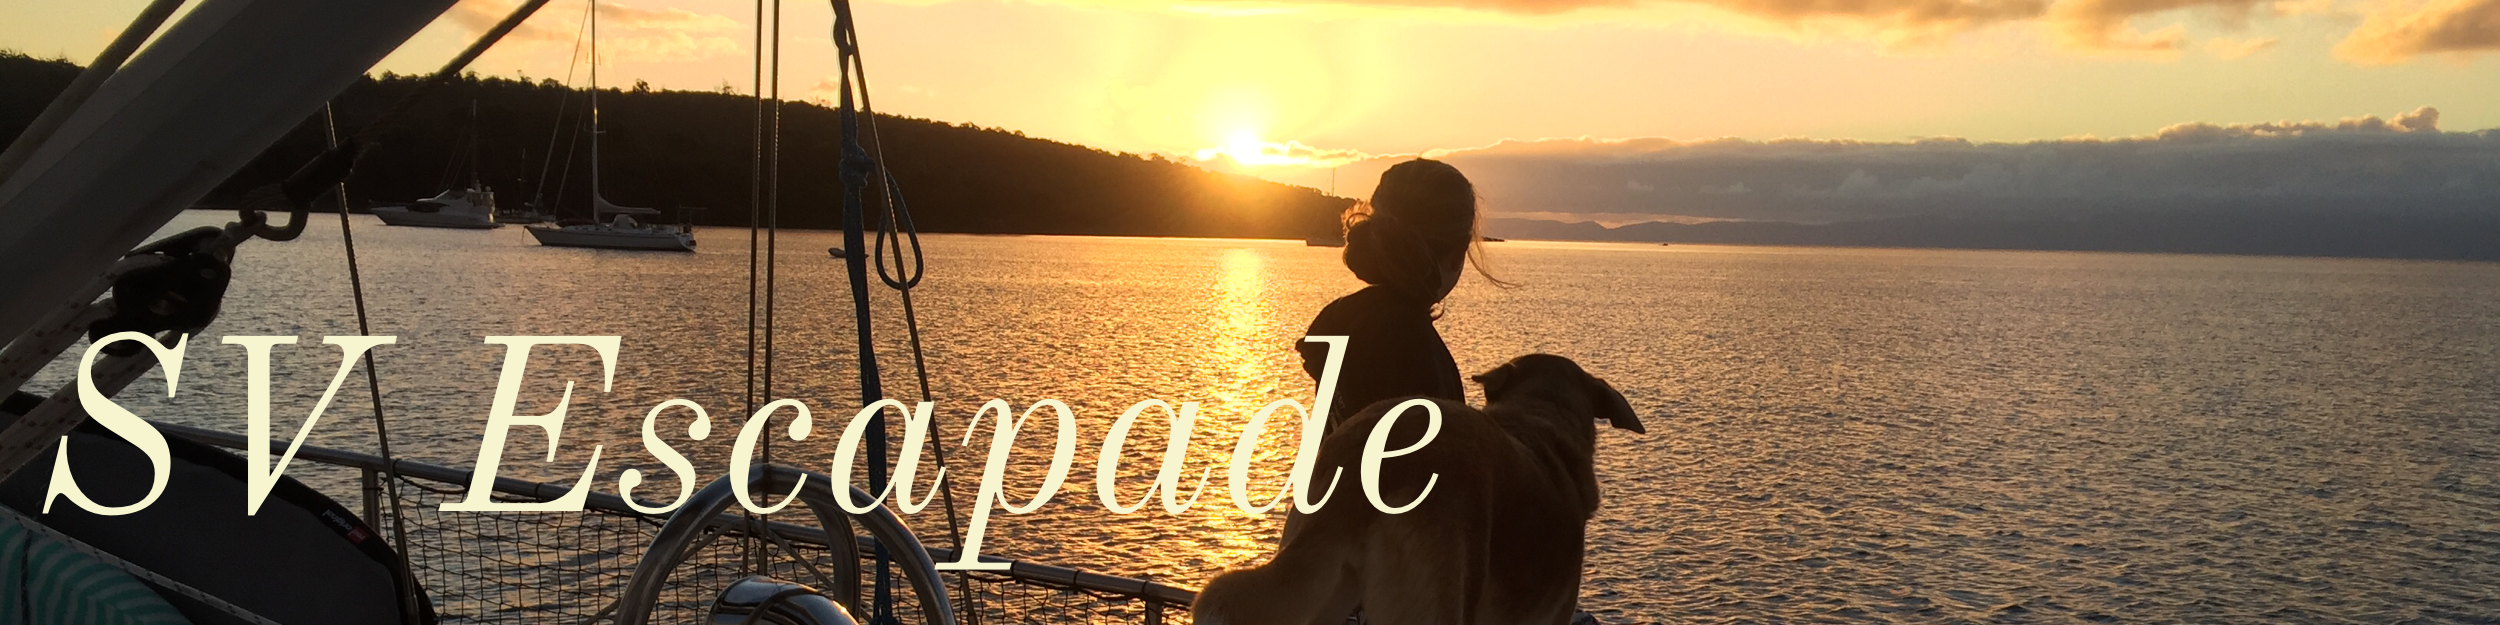 The adventures of sailing vessel Escapade